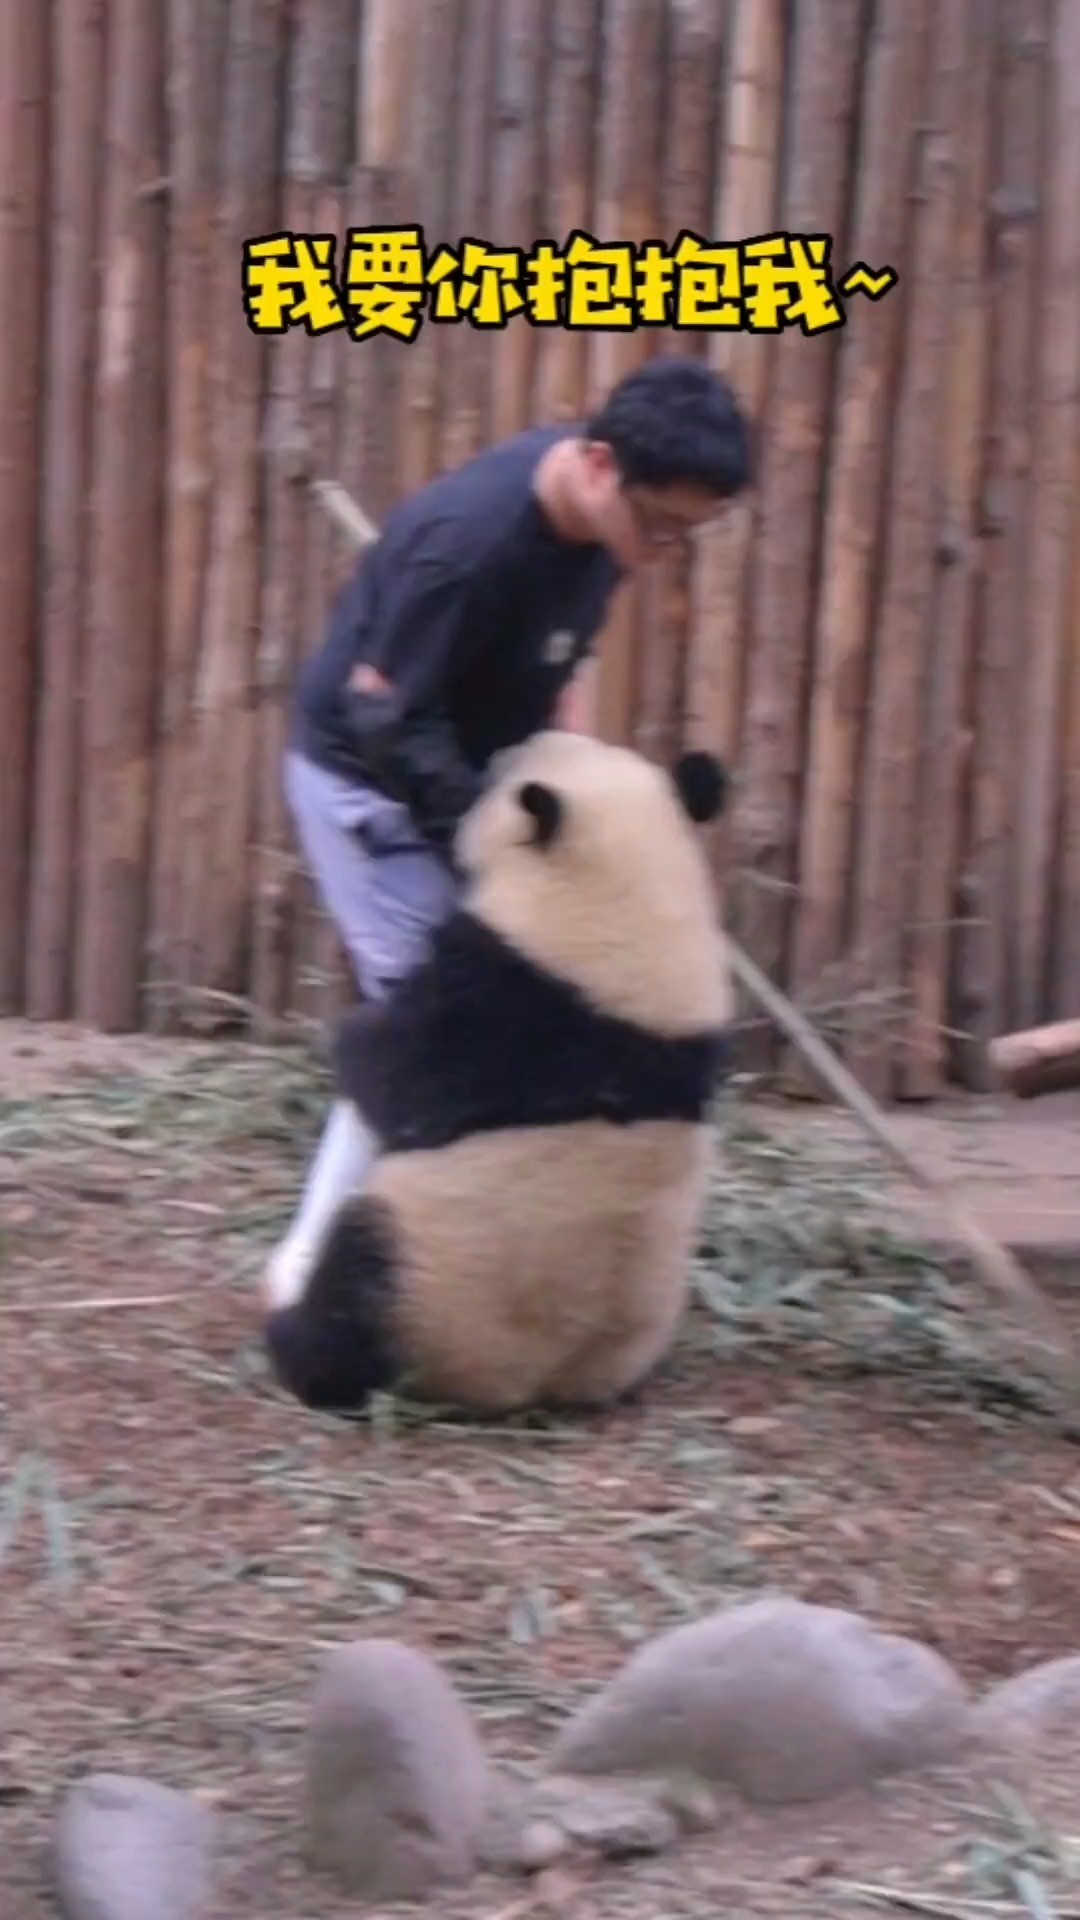 发箍奶爸：遇到这么会撒娇的熊猫怎嘛办？在线等！急！